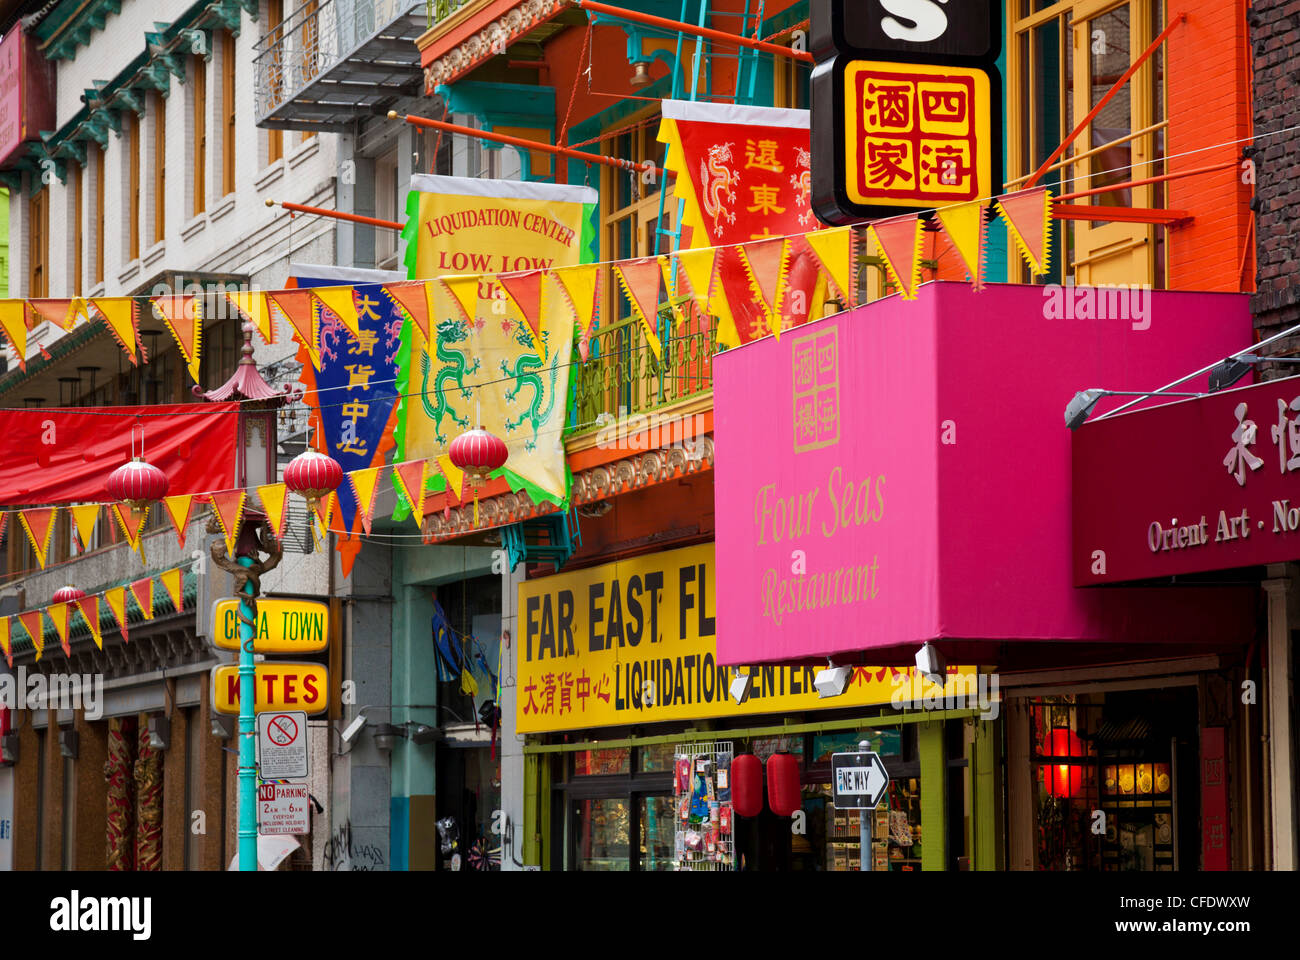 Bunte Fahnen, transparenten und Shopfronts in Chinatown, San Francisco, California, Vereinigte Staaten von Amerika Stockfoto